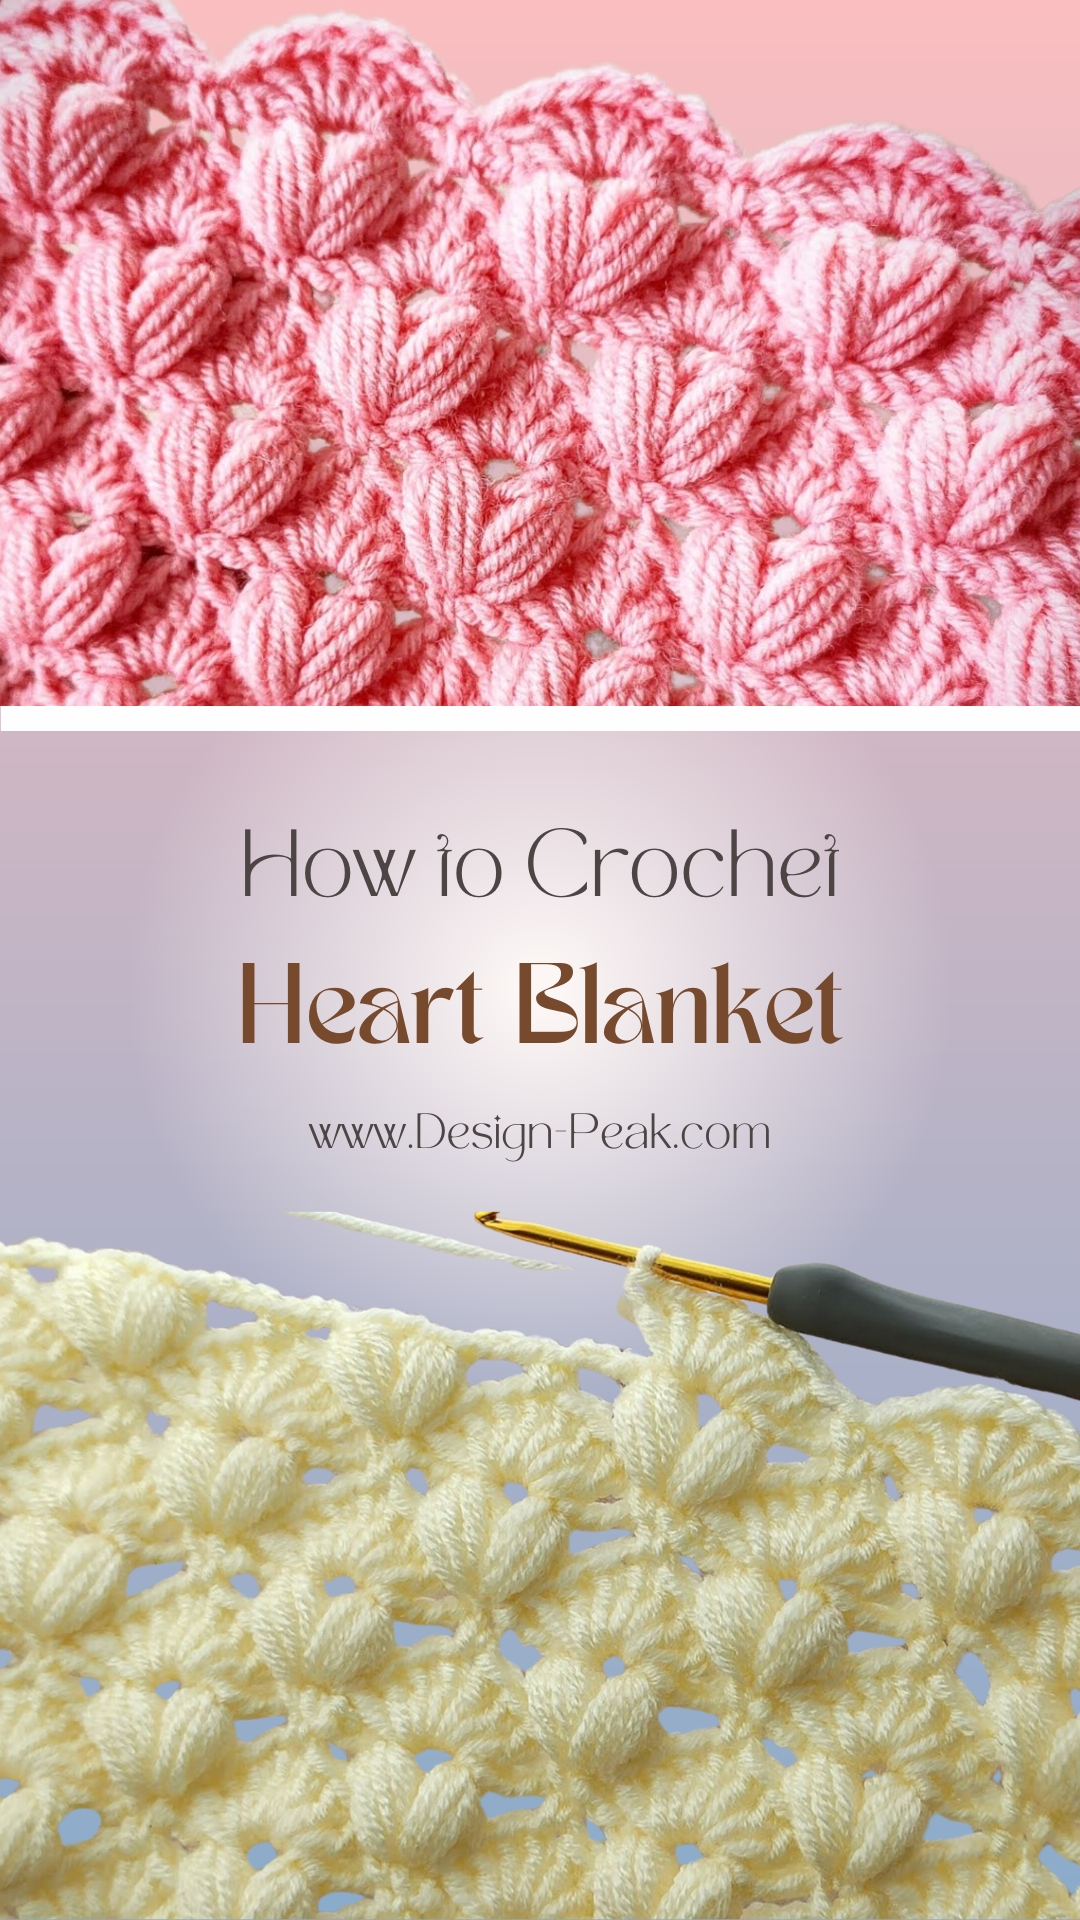 Crochet Hearts in a Blanket